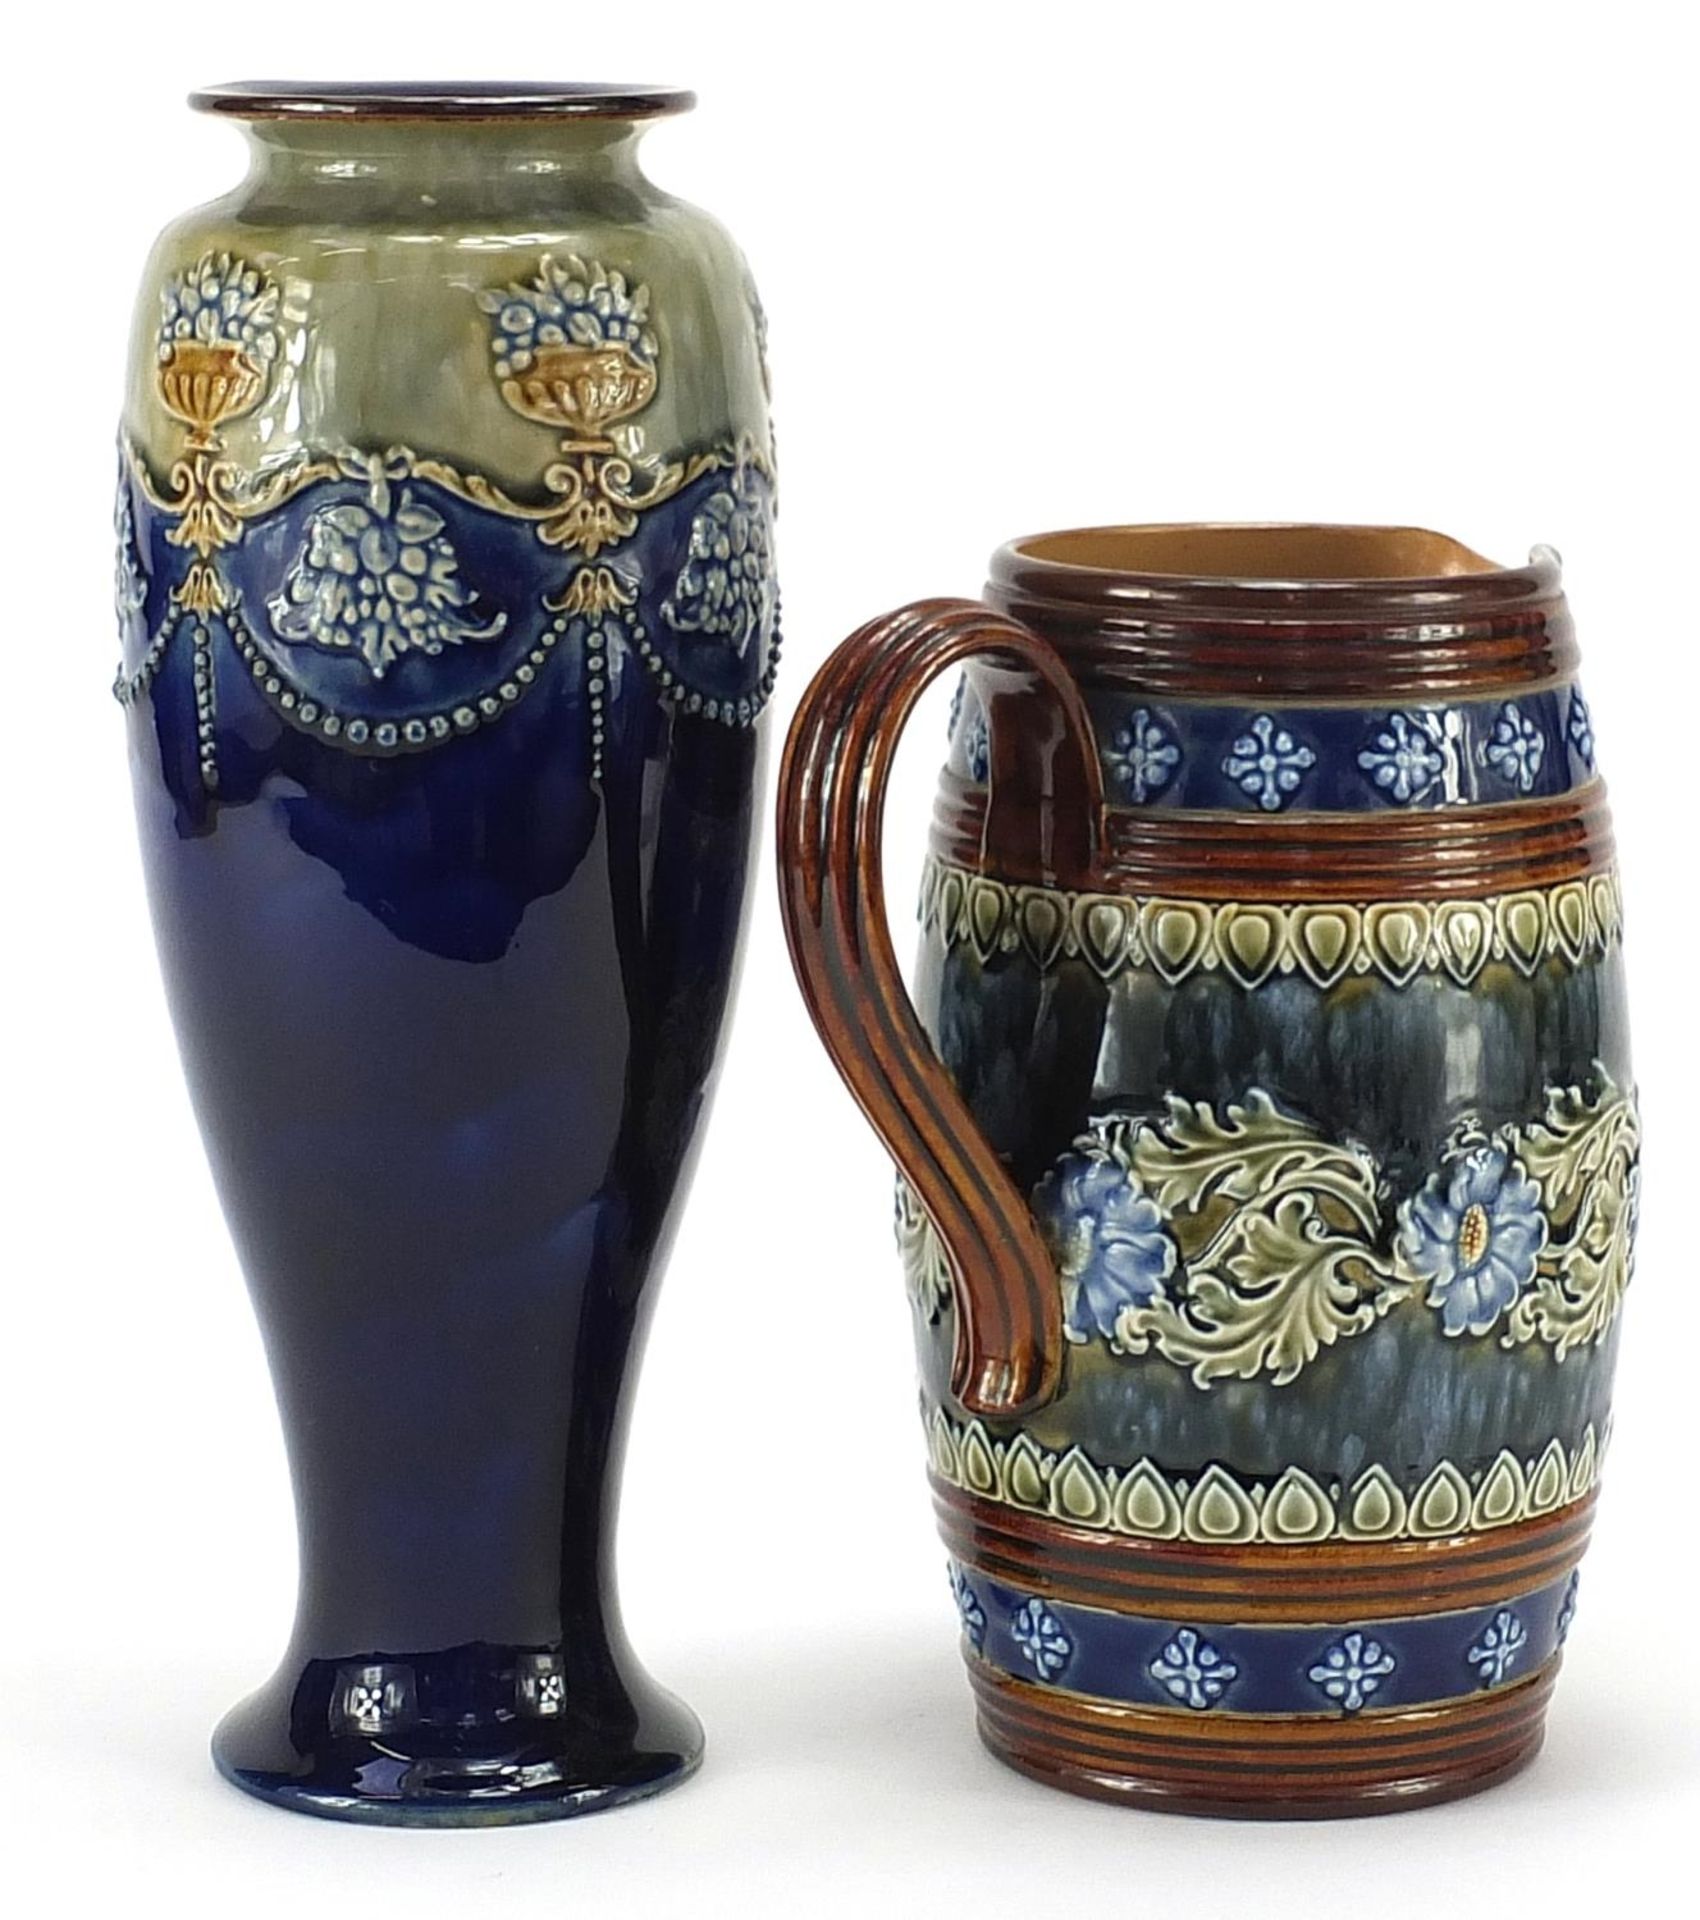 Doulton Lambeth stoneware jug and Royal Doulton stoneware vase hand painted with stylised flowers, - Bild 2 aus 4